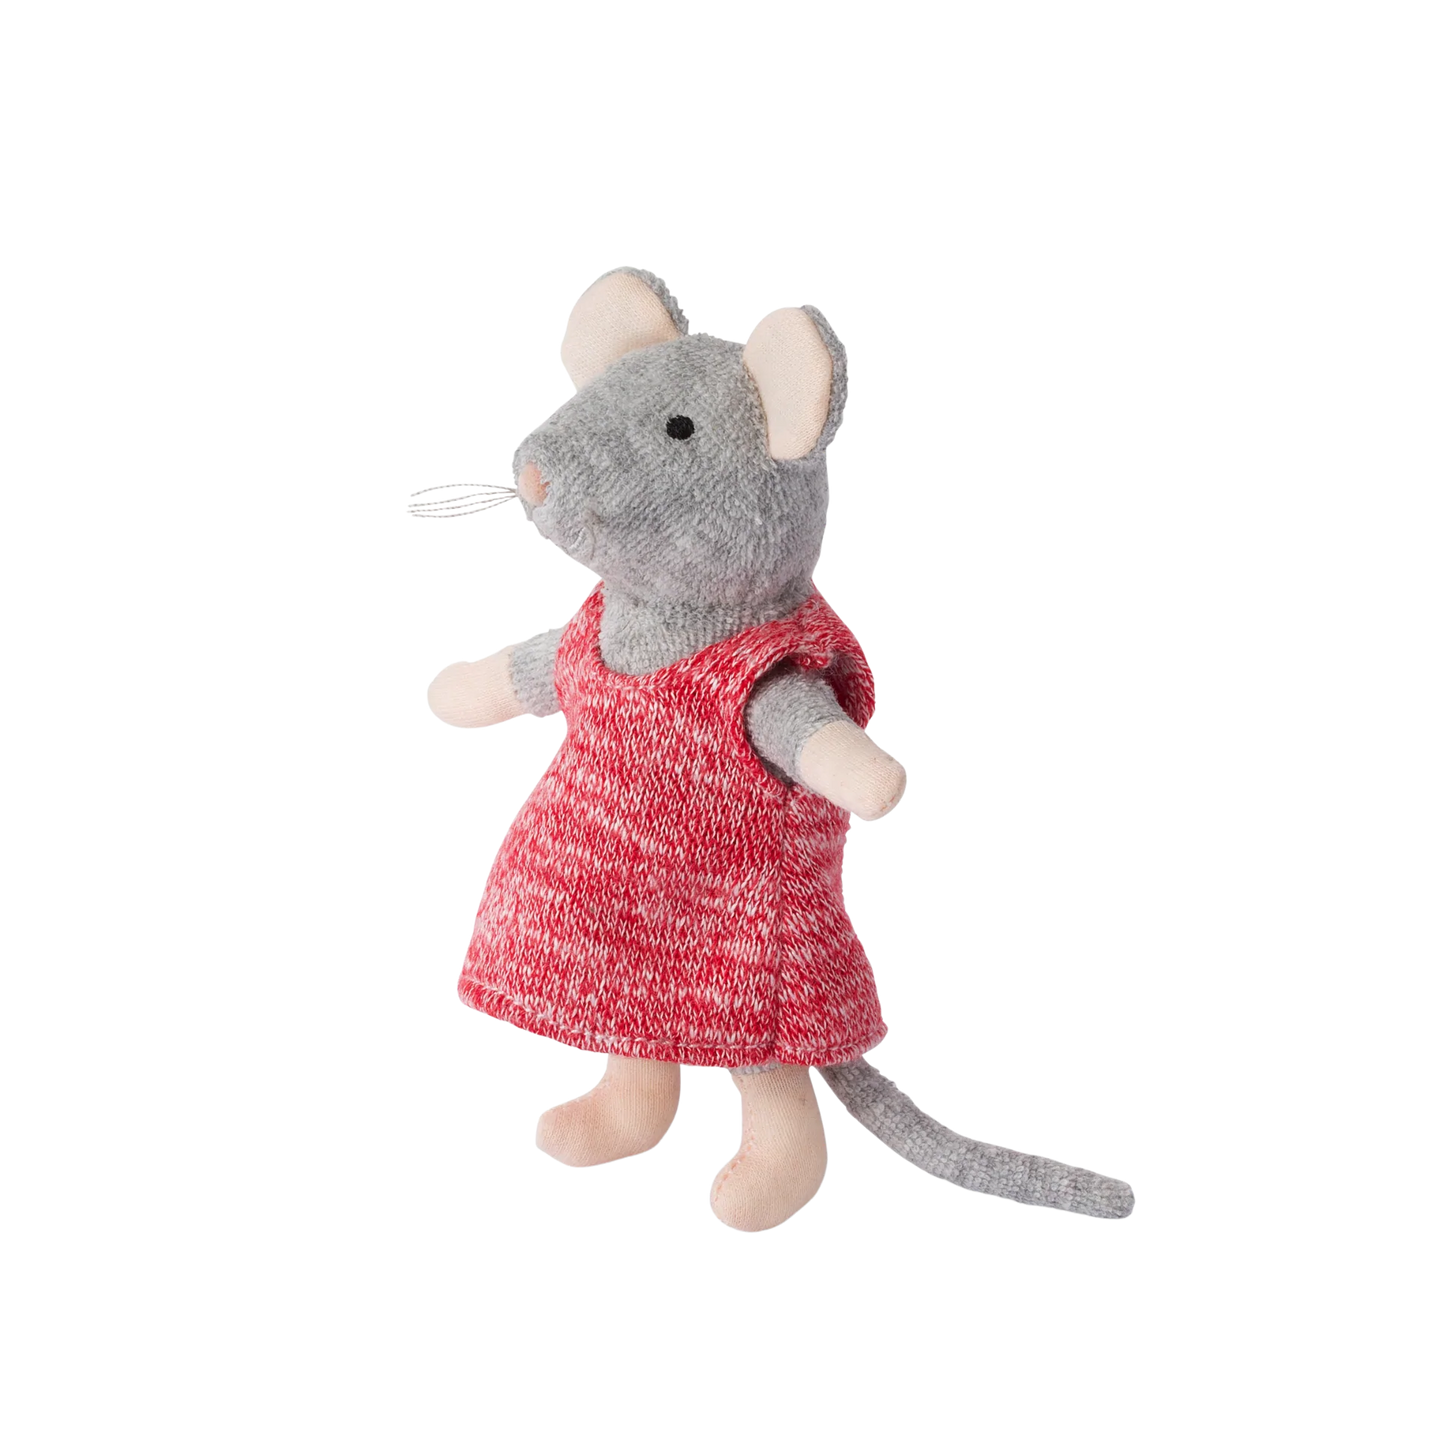 het muizenhuis knuffel muis Julia - la maison des souris peluche souris Julia